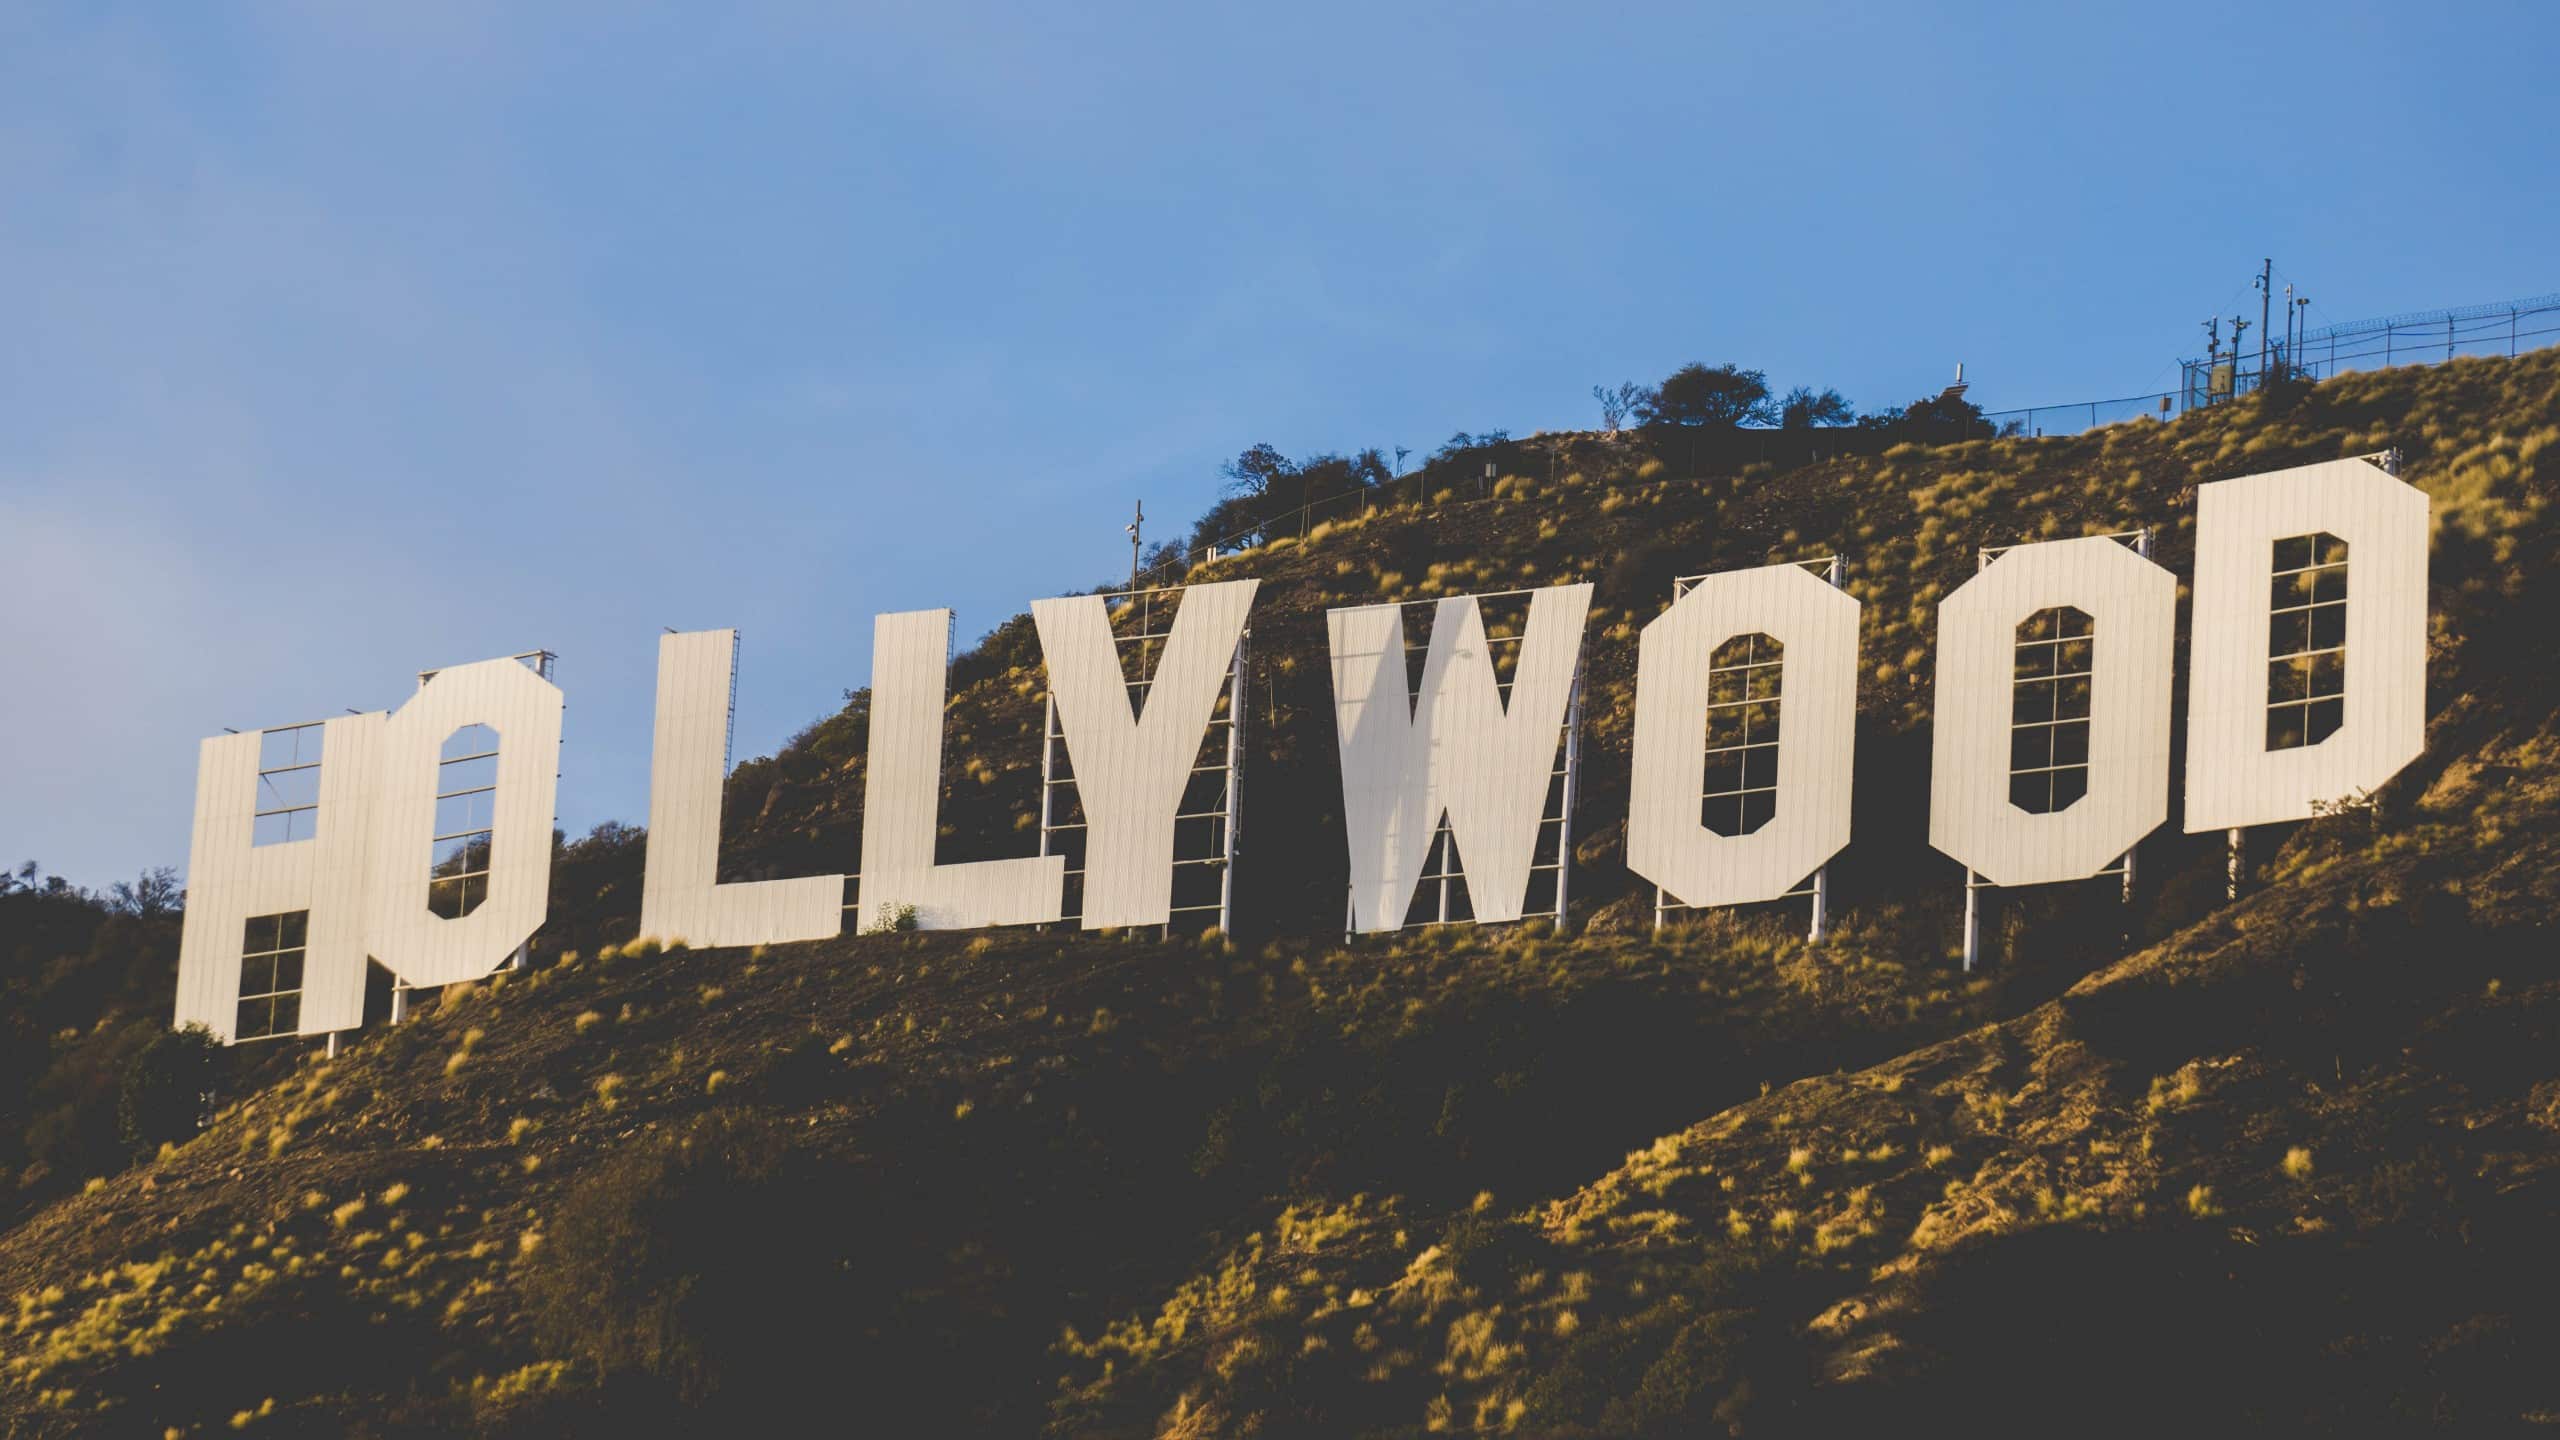 Zu seinem 100-jährigen Geburtstag erhielt das Hollywood Sign einen neuen Anstrich. Auch ein Besucherzentrum ist geplant. Bildquelle: Unsplash